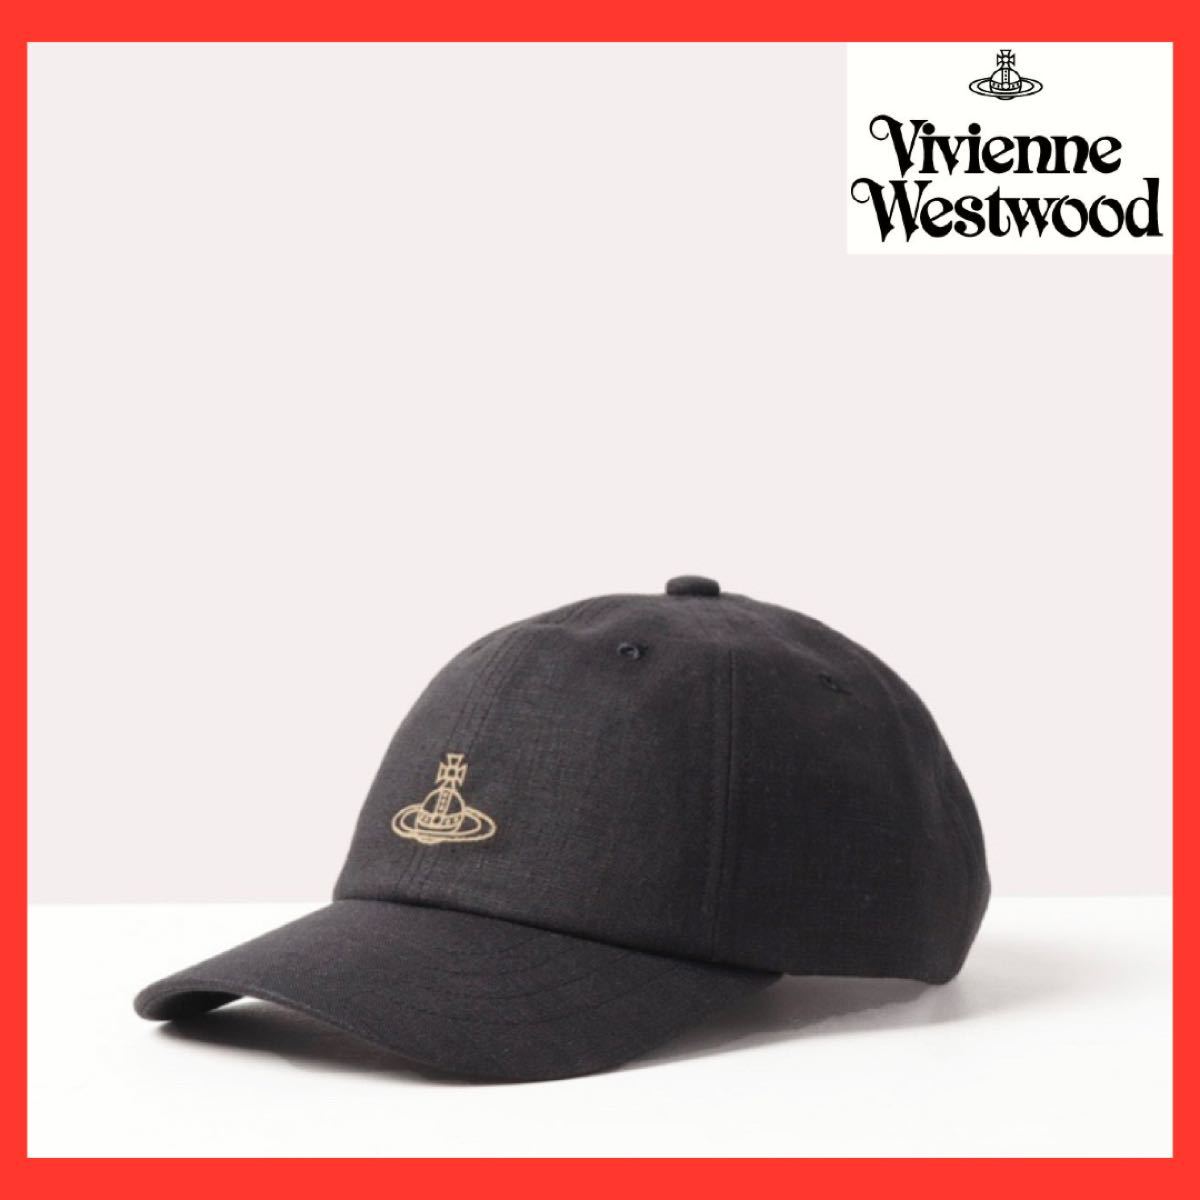 ヴィヴィアン・ウエストウッド Vivienne Westwood ELCHO STREET LONDON キャップ 帽子